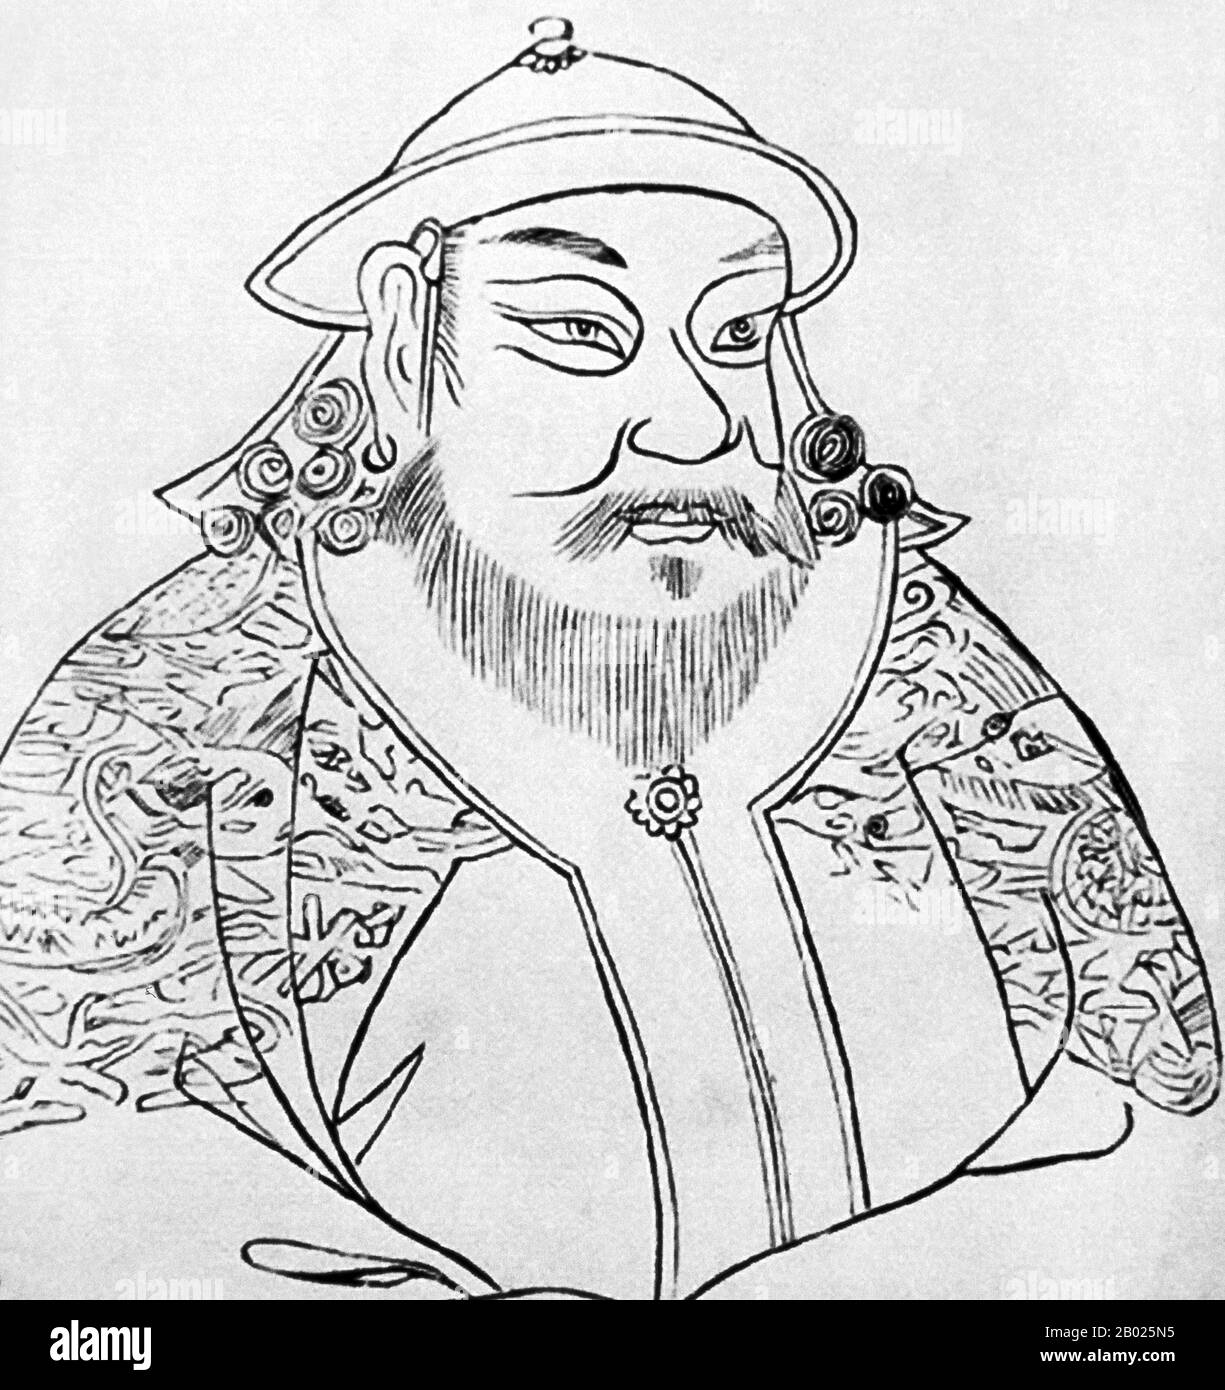 Kublai (o Khubilai) Khan (pinyin: Hūbìliè, (23 settembre 1215 – 18 febbraio 1294) è stato il quinto grande Khan dell'impero mongolo dal 1260 al 1294 ed il fondatore della dinastia Yuan nell'Asia orientale. Come secondo figlio di Tolui e Sorgaghtani Beki e nipote di Genghis Khan, egli rivendicò il titolo di Khagan dell'Ikh Mongol Uls (impero mongolo). Nel 1271, Kublai stabilì la dinastia Yuan, che allora governò sull'attuale Mongolia, Tibet, Turkestan orientale, Cina settentrionale, gran parte della Cina occidentale, e alcune aree adiacenti, e assunse il ruolo di imperatore della Cina. Entro il 1279, il Yuan forc Foto Stock